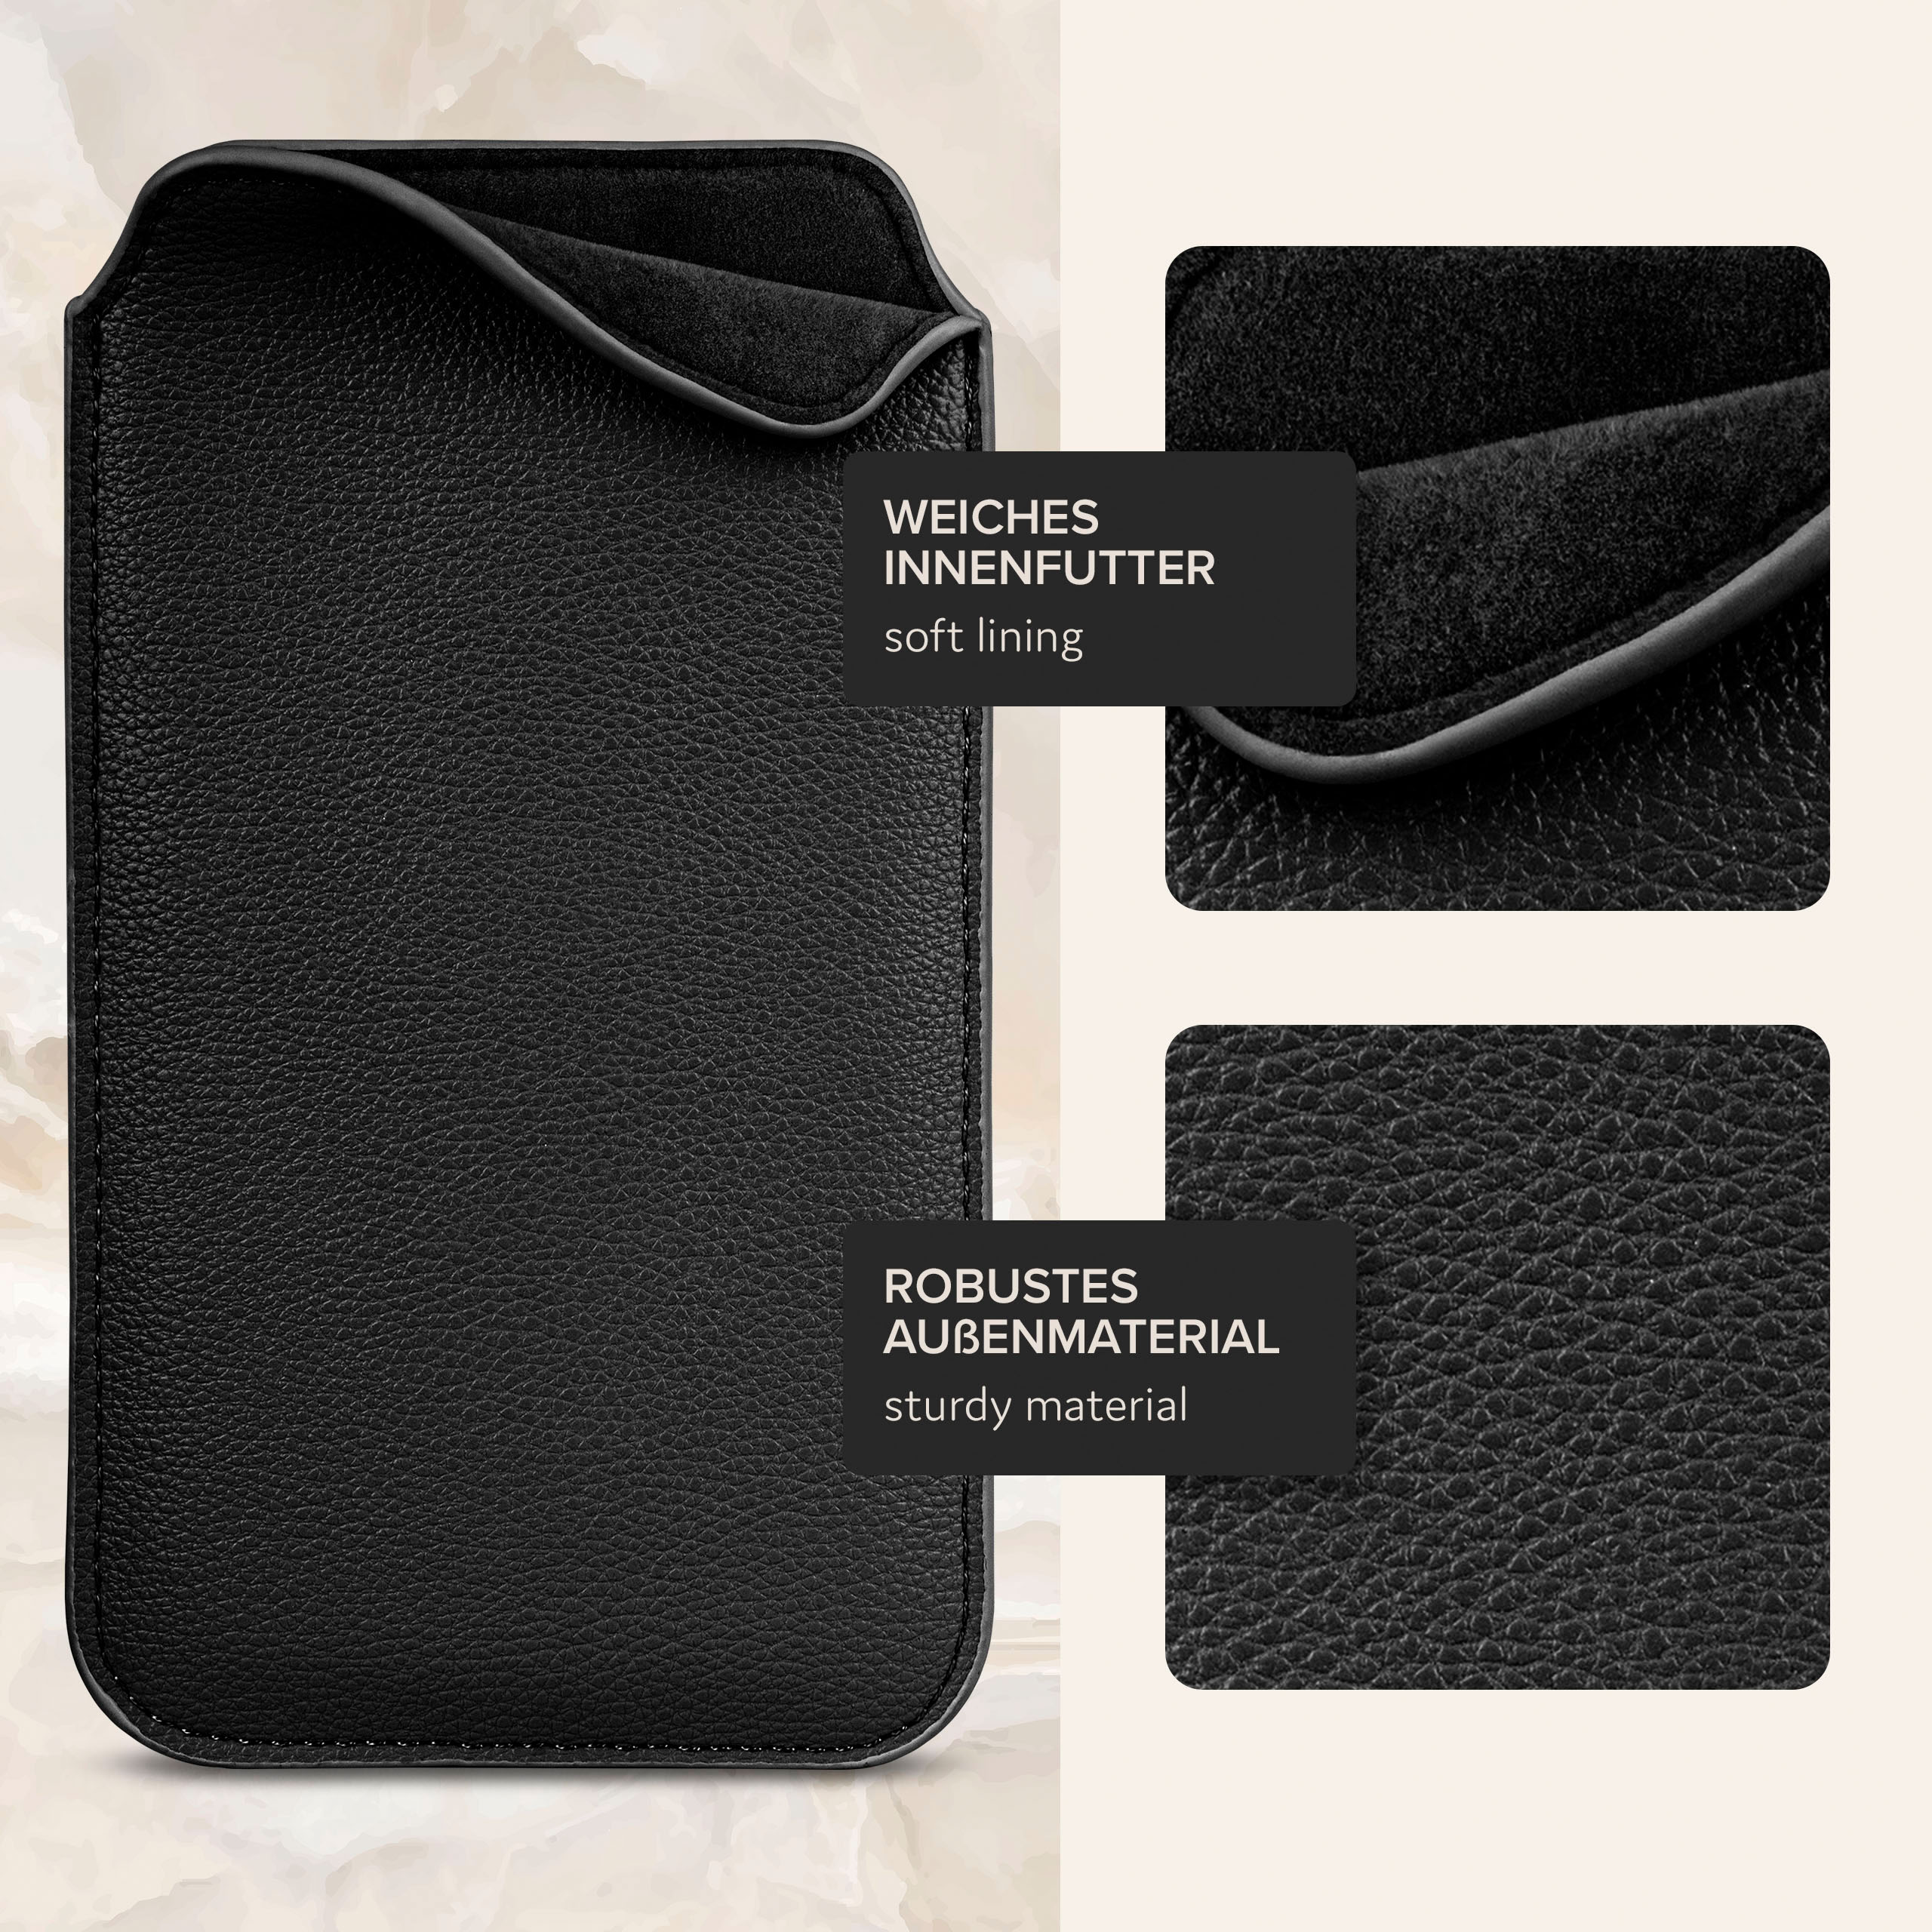 Full S7, Schwarz Einsteckhülle Cover, mit Zuglasche, Samsung, Galaxy ONEFLOW